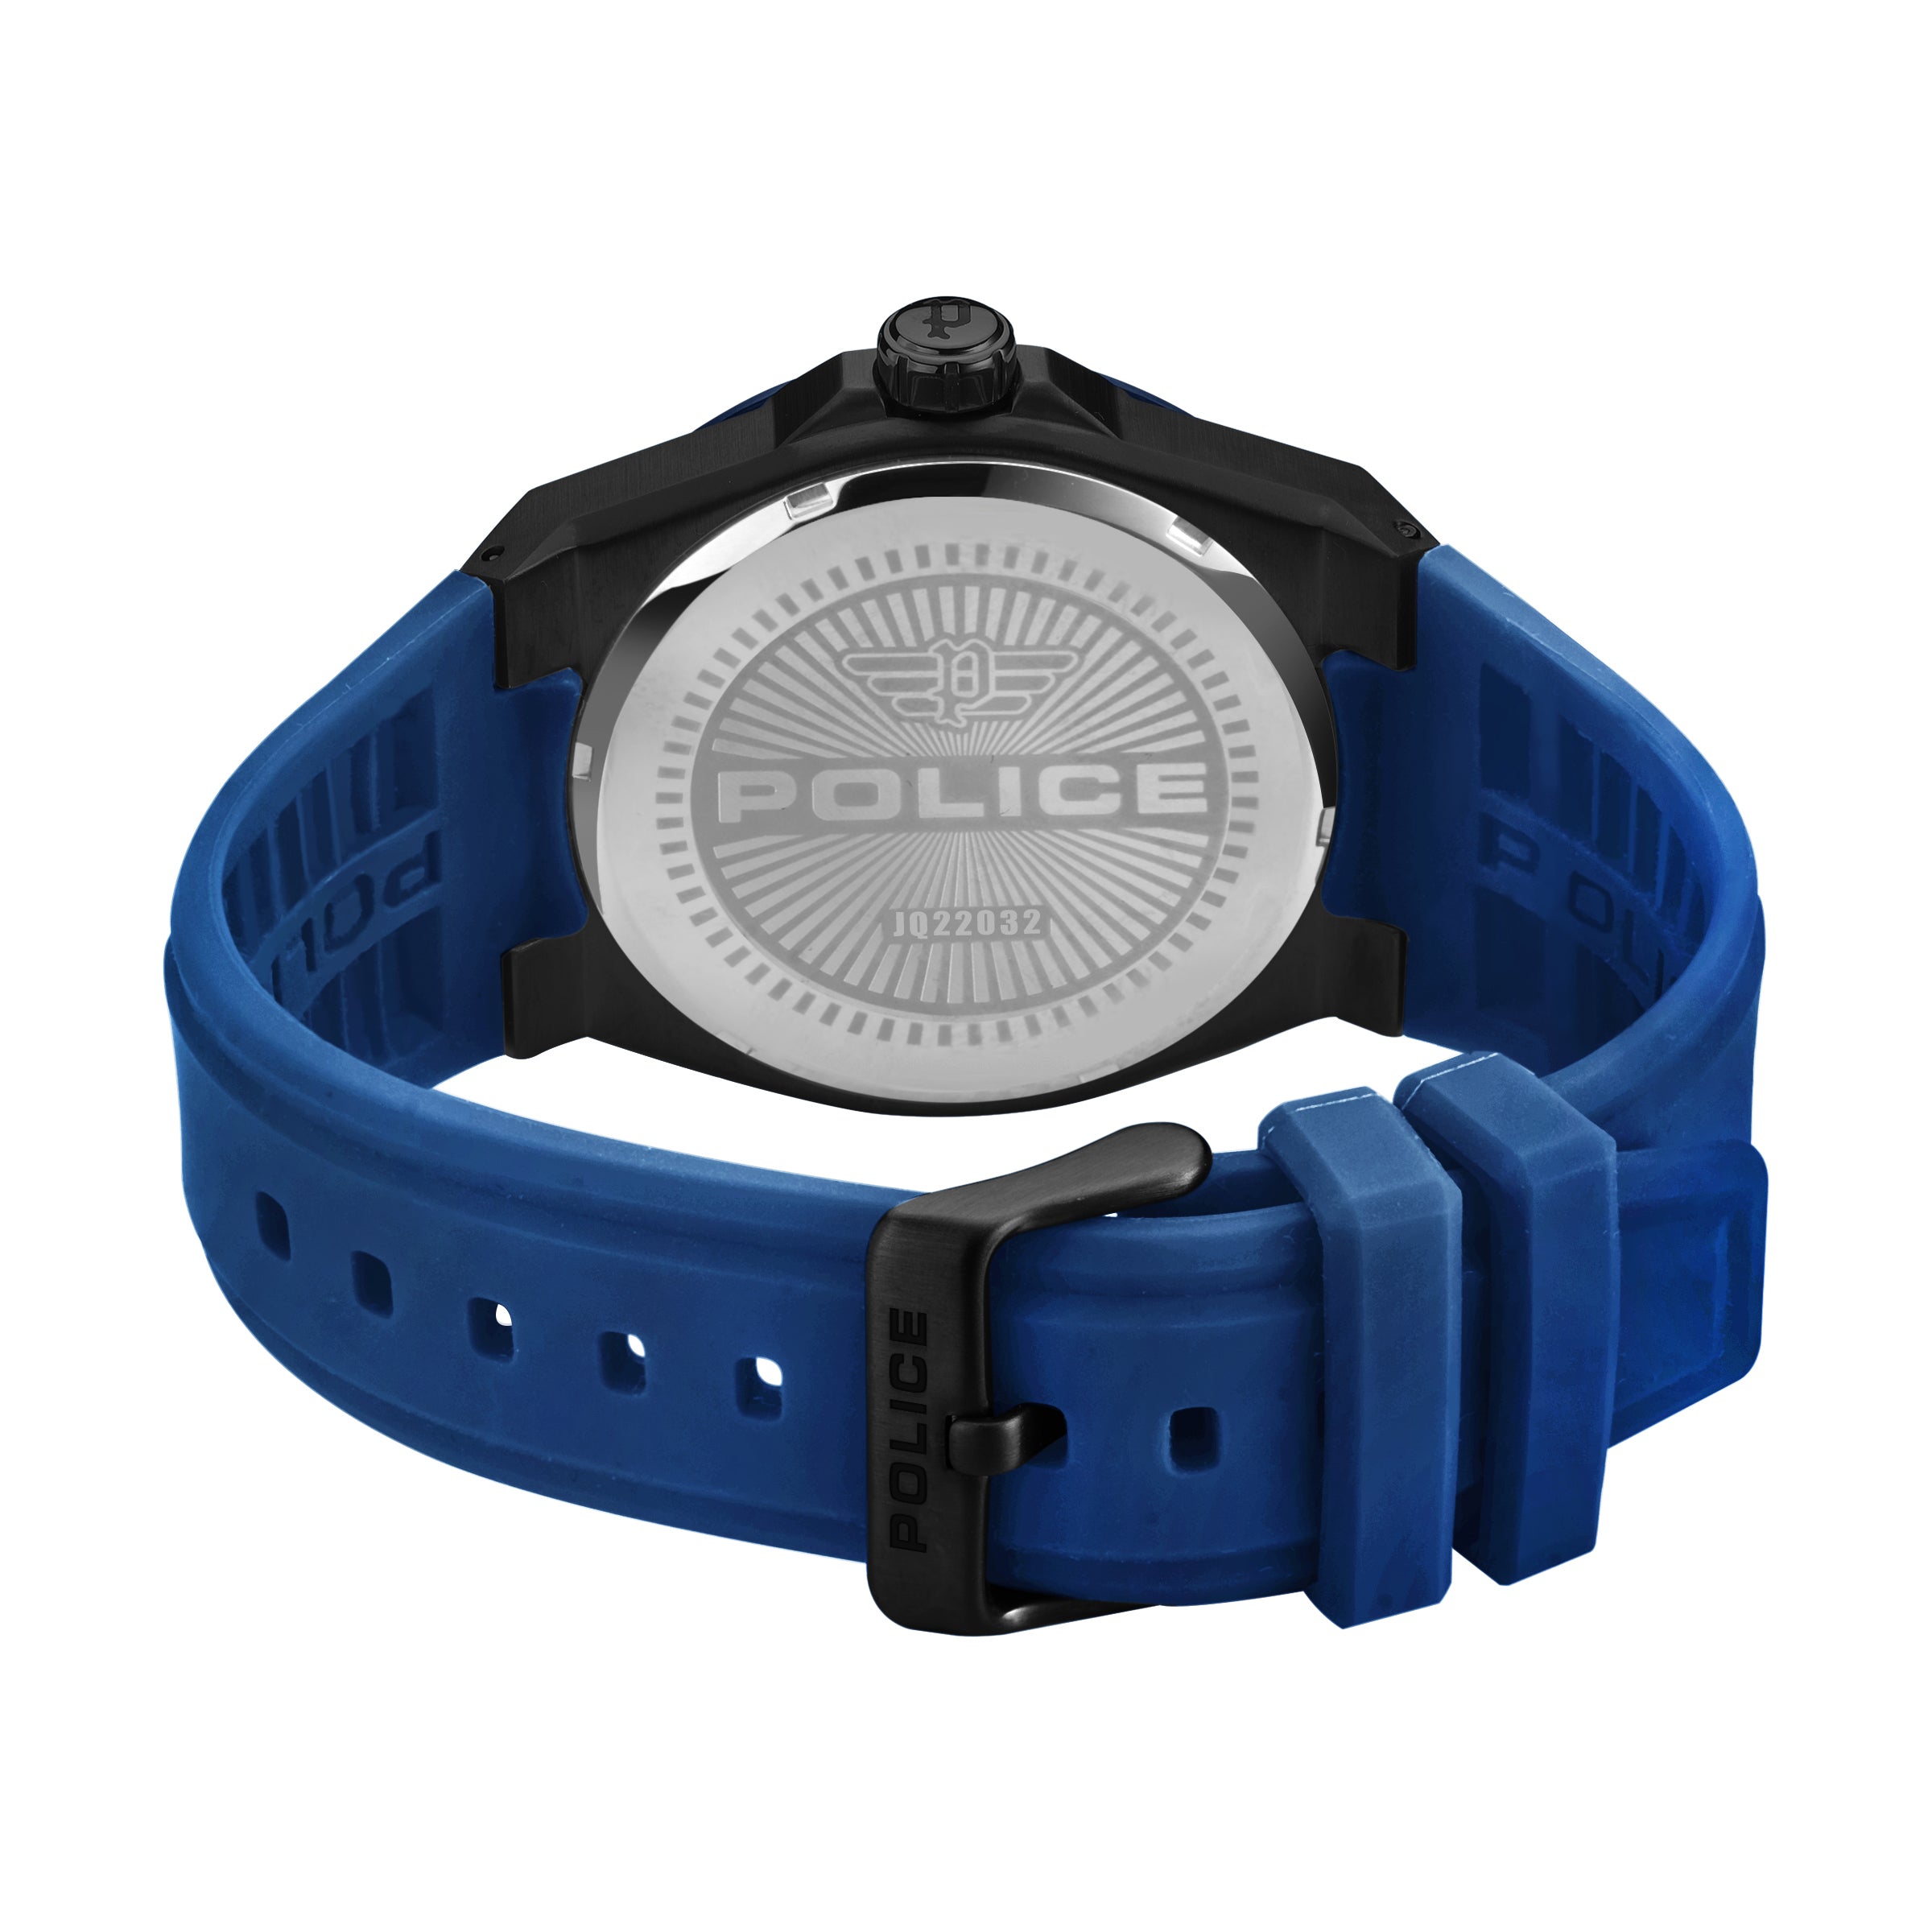 Police Men's Quartz Watch, Black and Blue Dial - PL-0288